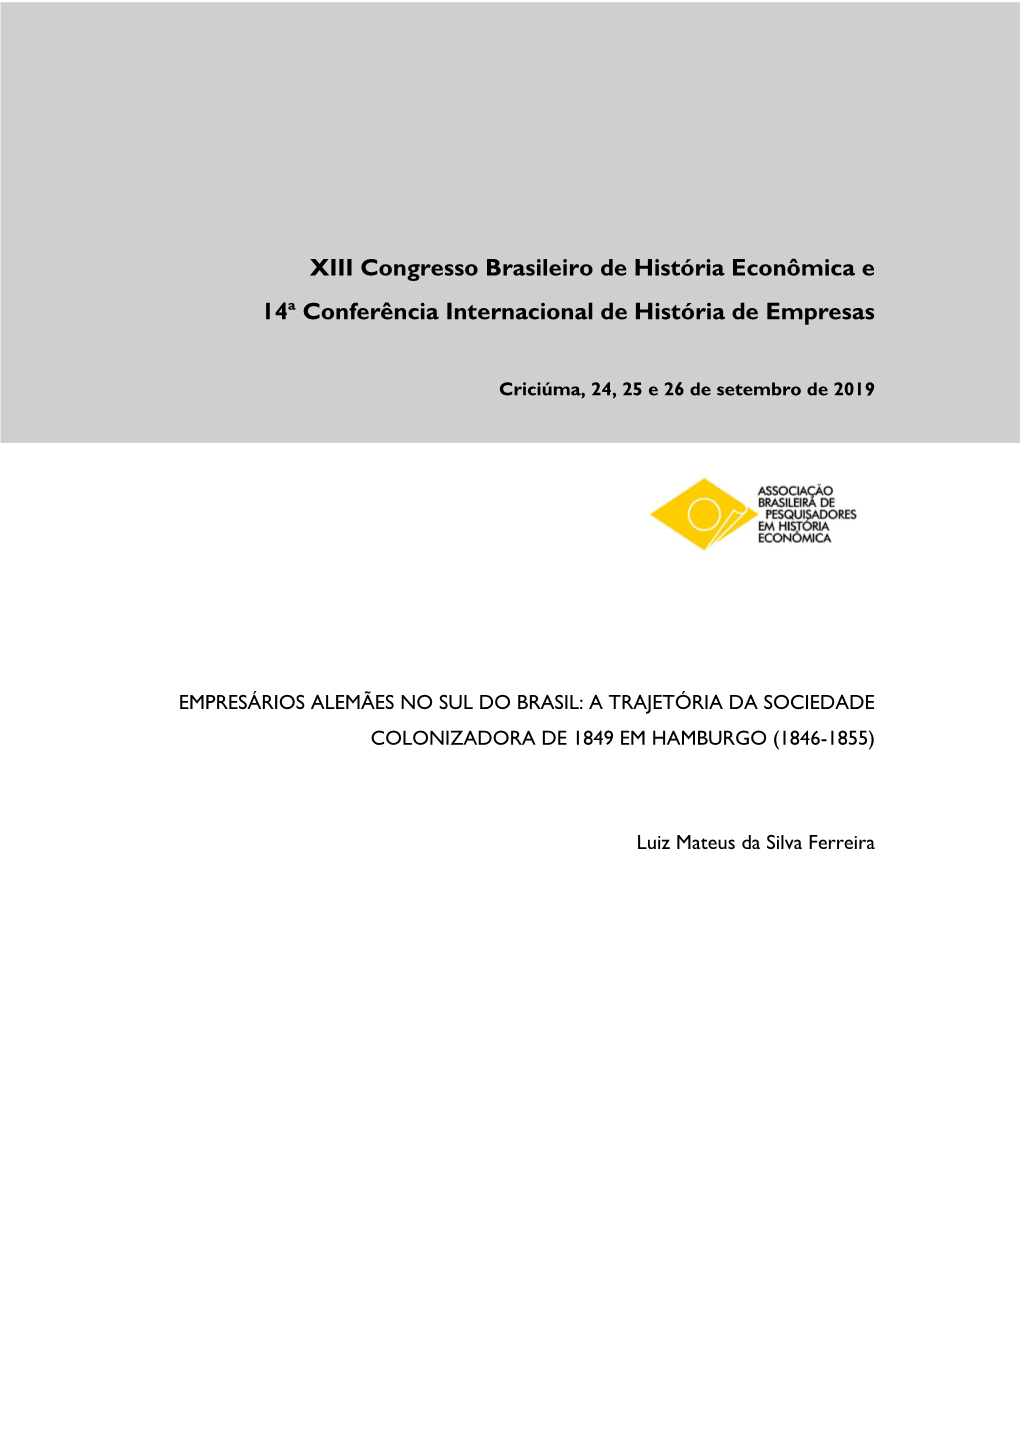 XIII Congresso Brasileiro De História Econômica E 14A Conferência Internacional De História De Empresas